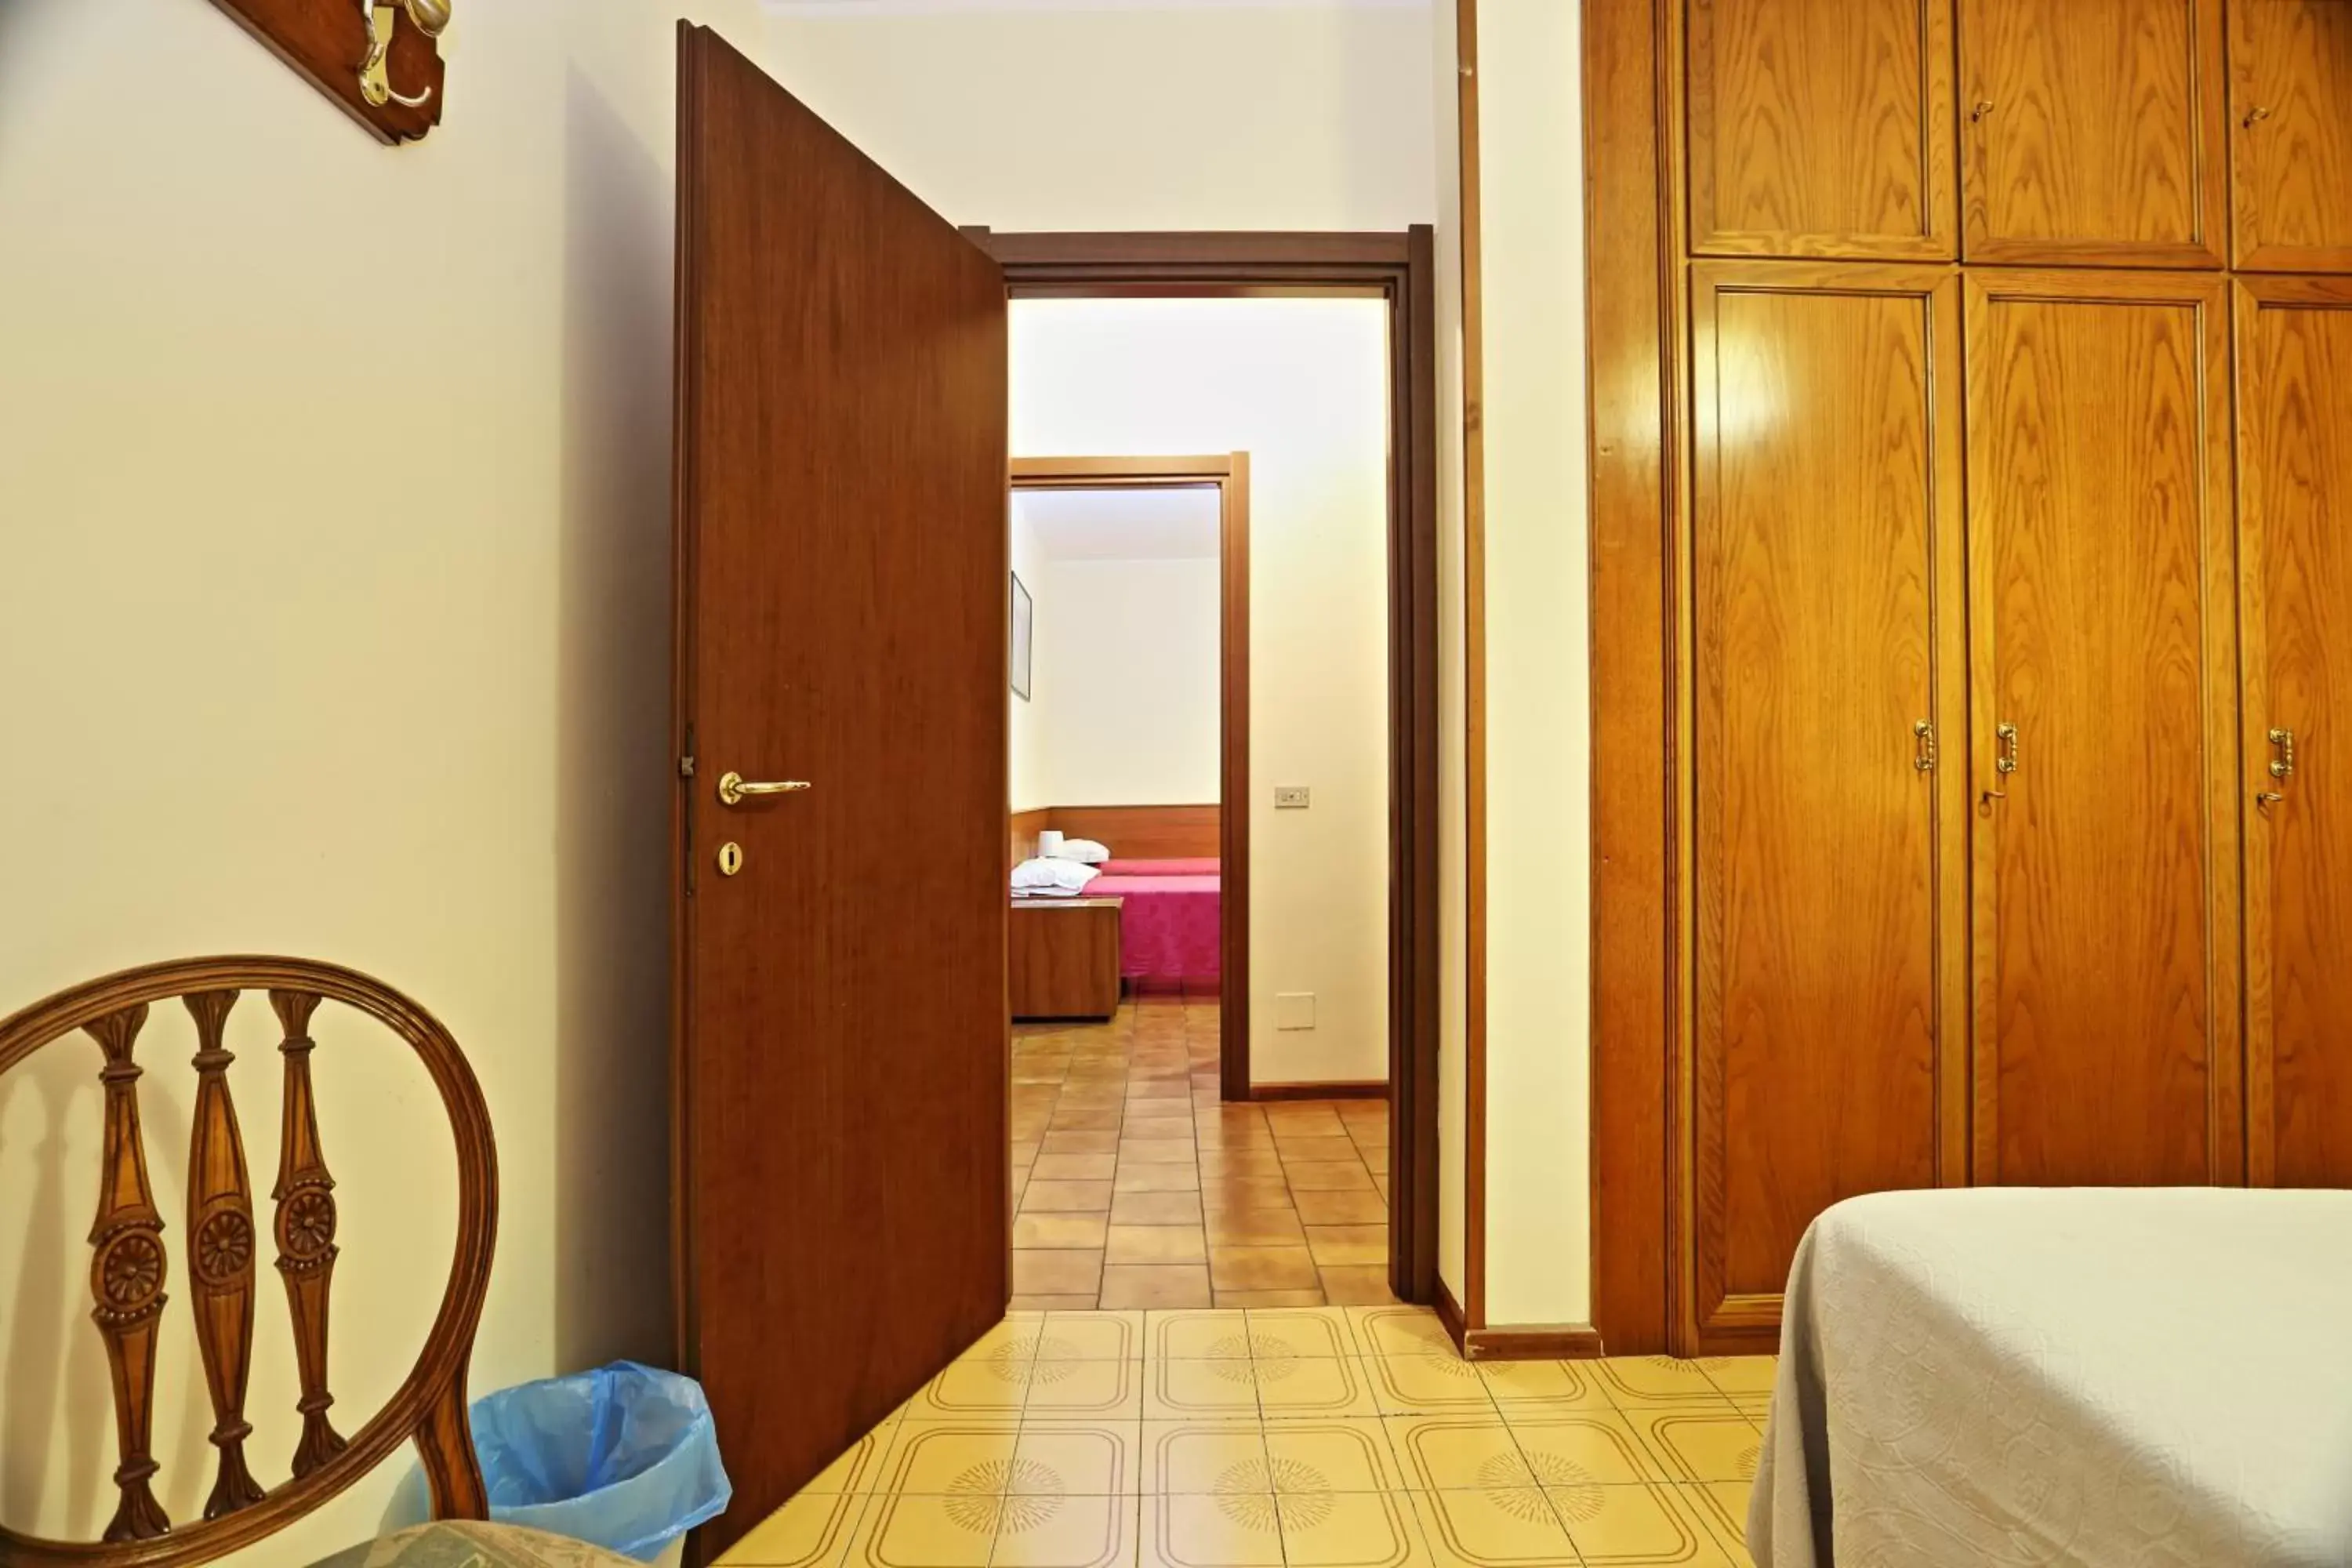 Bedroom, Bathroom in Hotel Residence Sogno